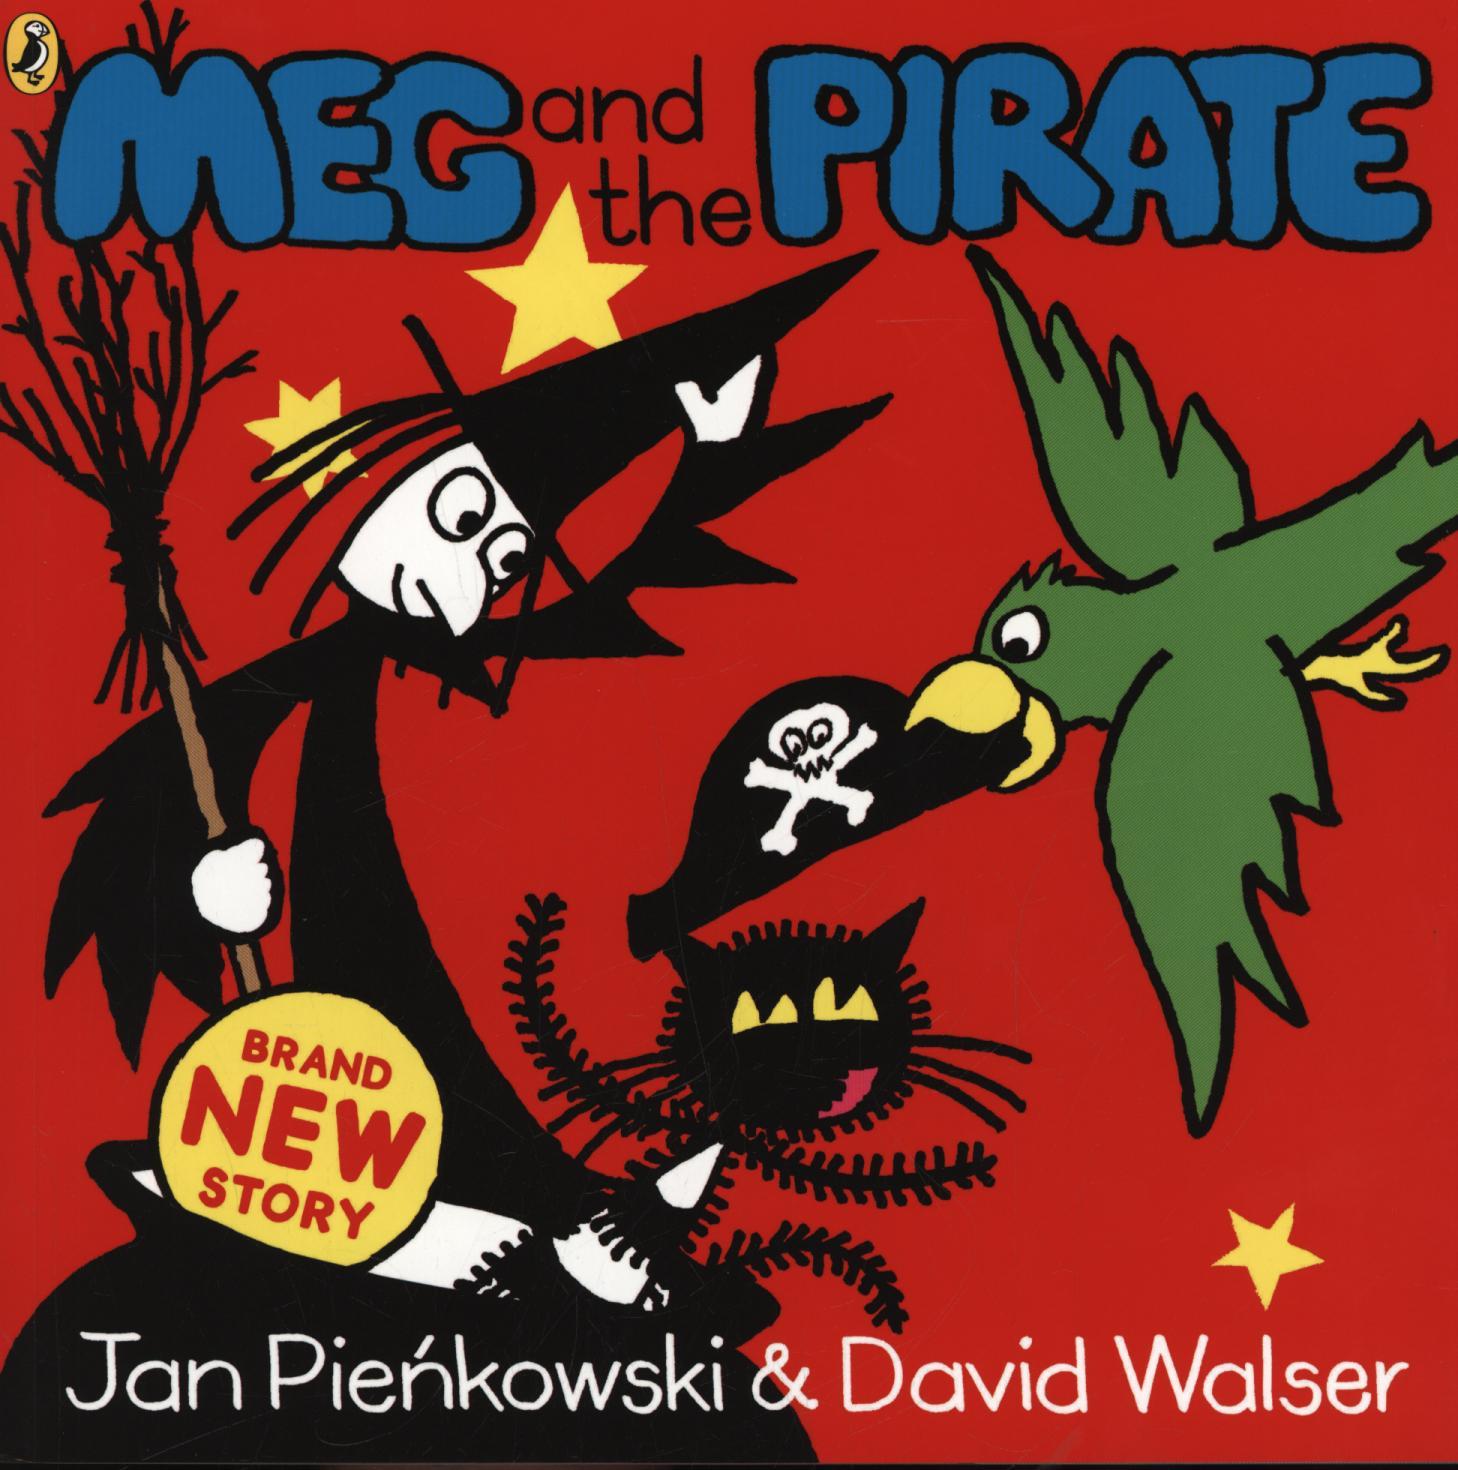 Meg and the Pirate - Jan Pienkowski